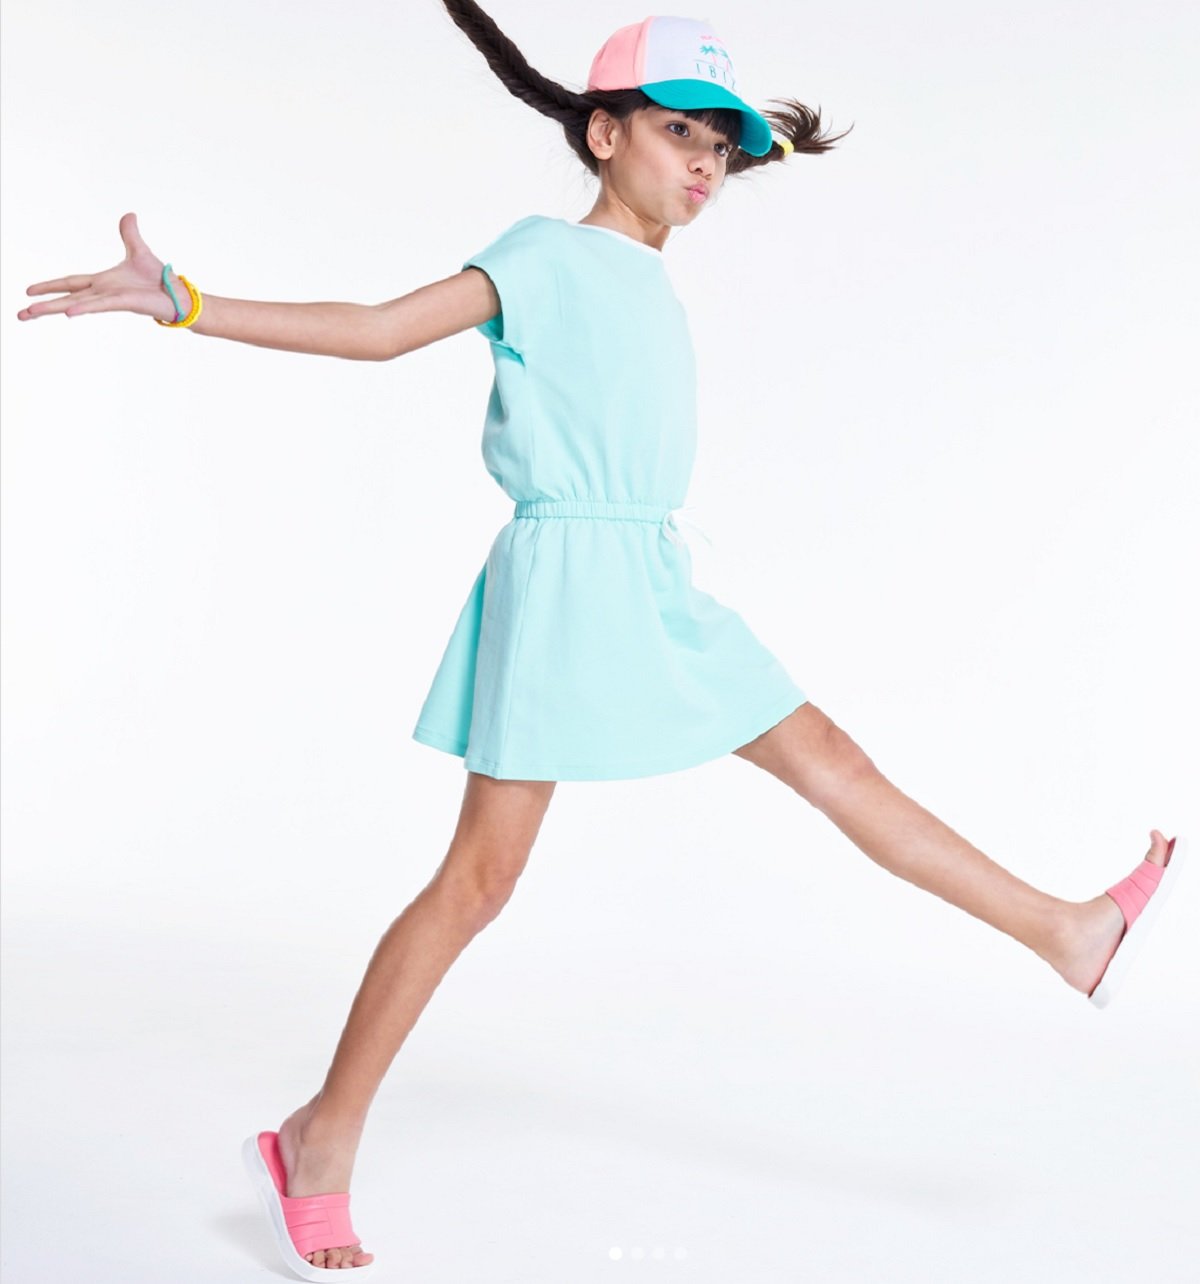 El gigante francés de moda infantil Okaïdi se consolida en Catalunya con 20 nuevas tiendas